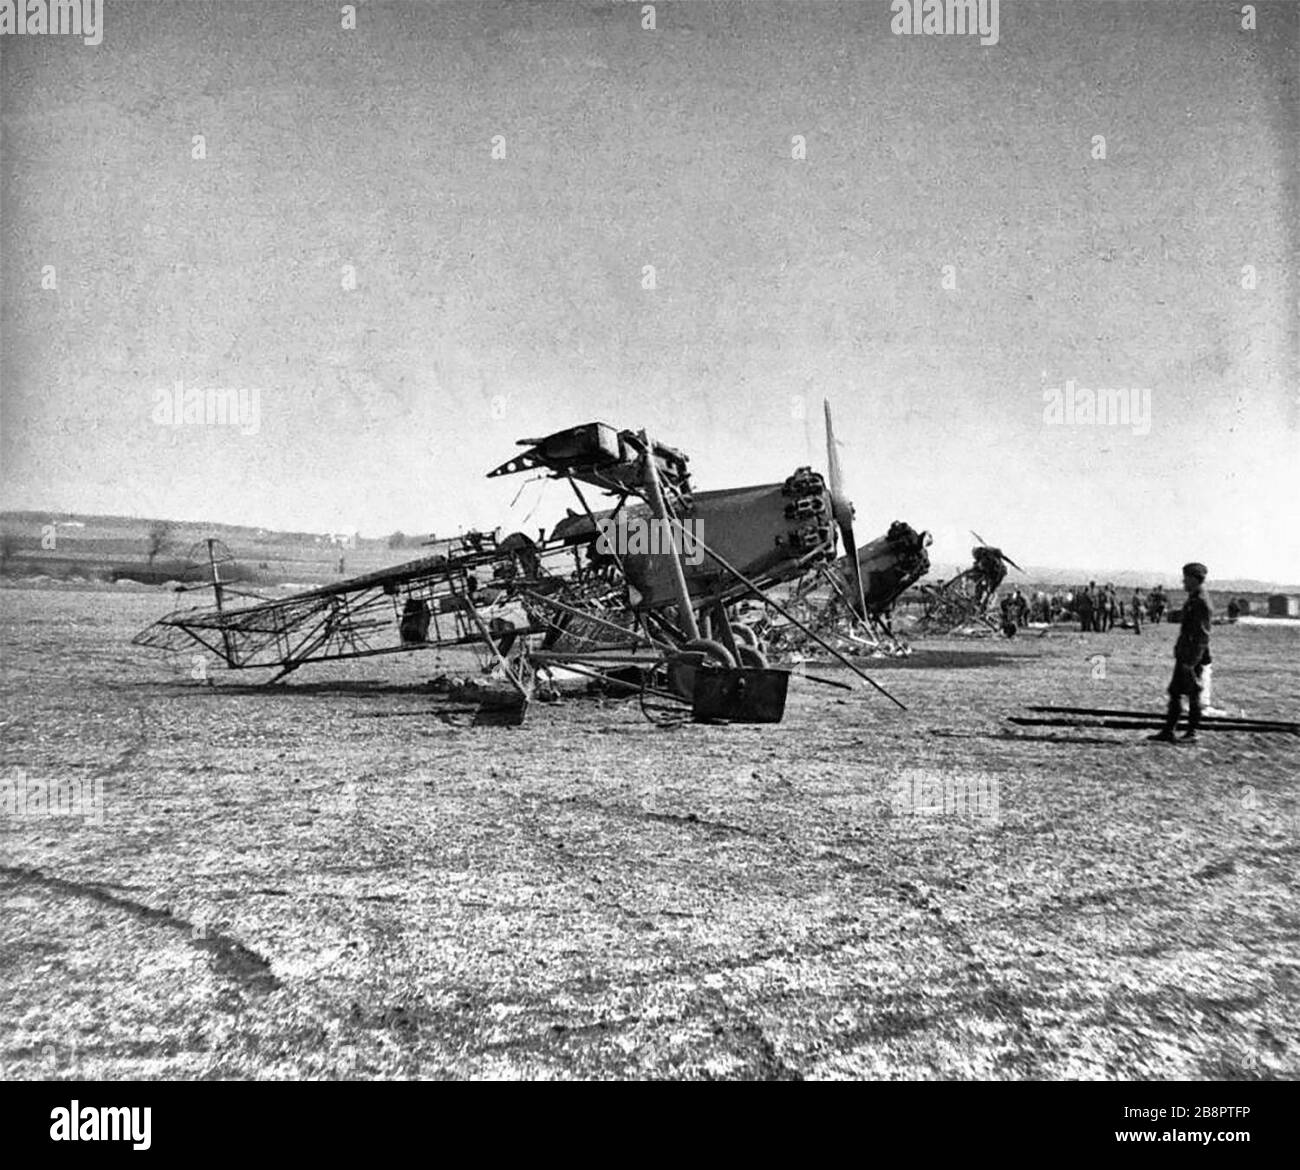 Die dänische Fokker C.VS liegt nach deutschen Luftangriffen in Trümmern bei Vaerlosen. April 1940 Stockfoto